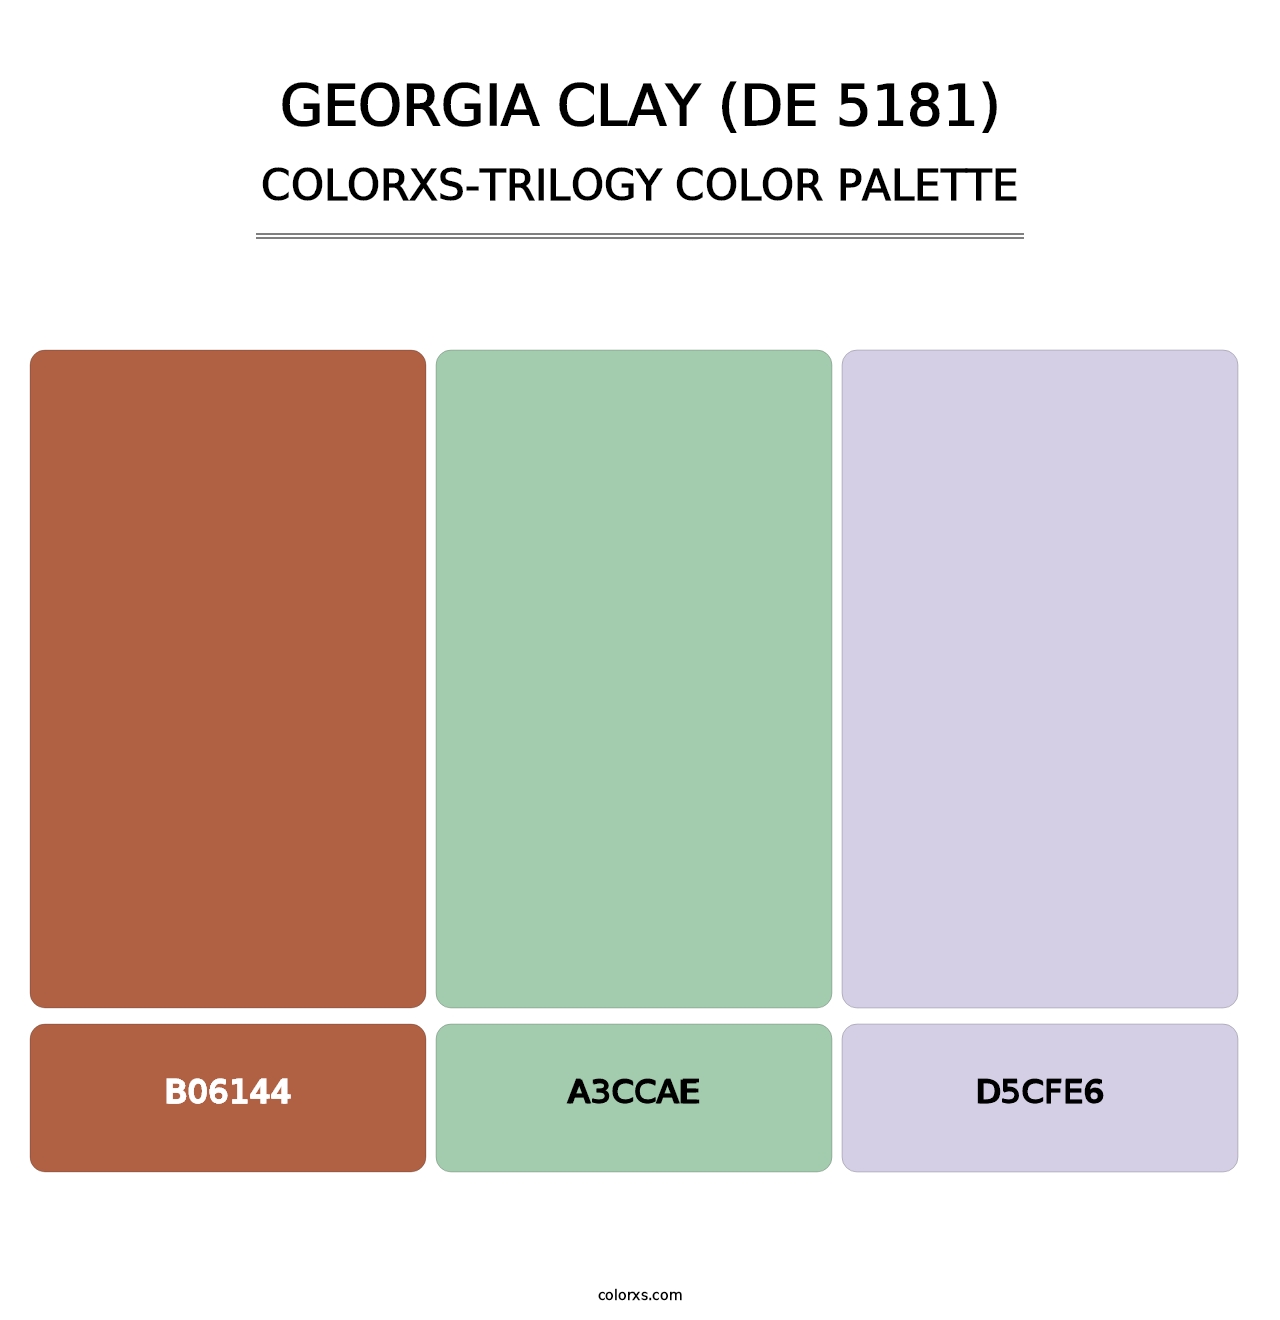 Georgia Clay (DE 5181) - Colorxs Trilogy Palette